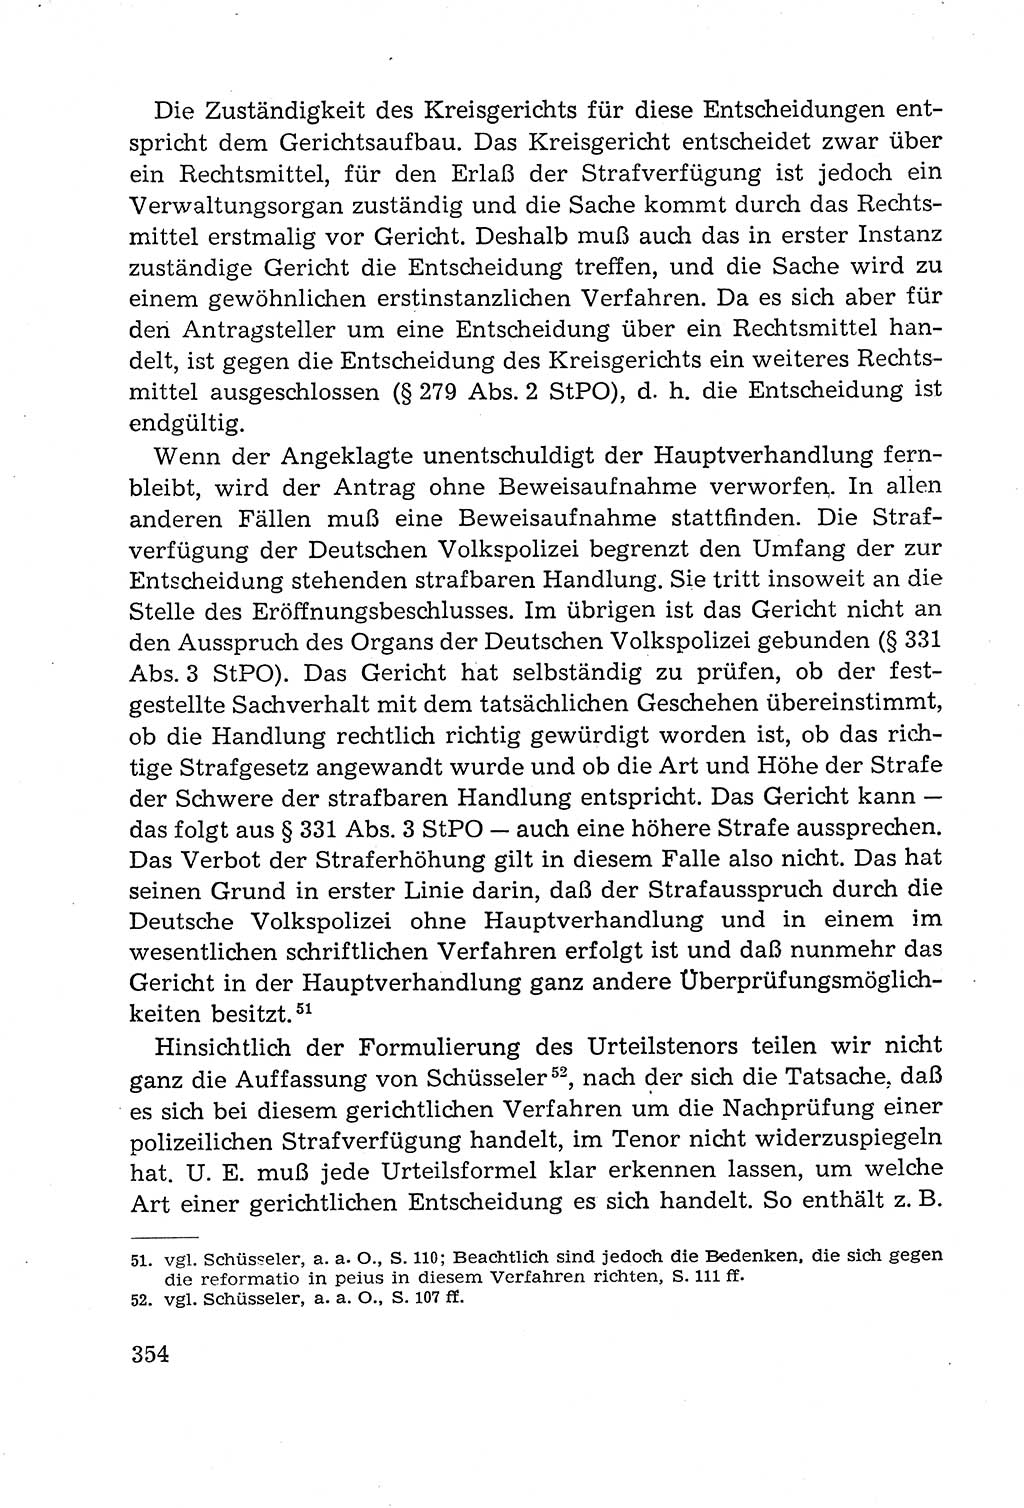 Leitfaden des Strafprozeßrechts der Deutschen Demokratischen Republik (DDR) 1959, Seite 354 (LF StPR DDR 1959, S. 354)